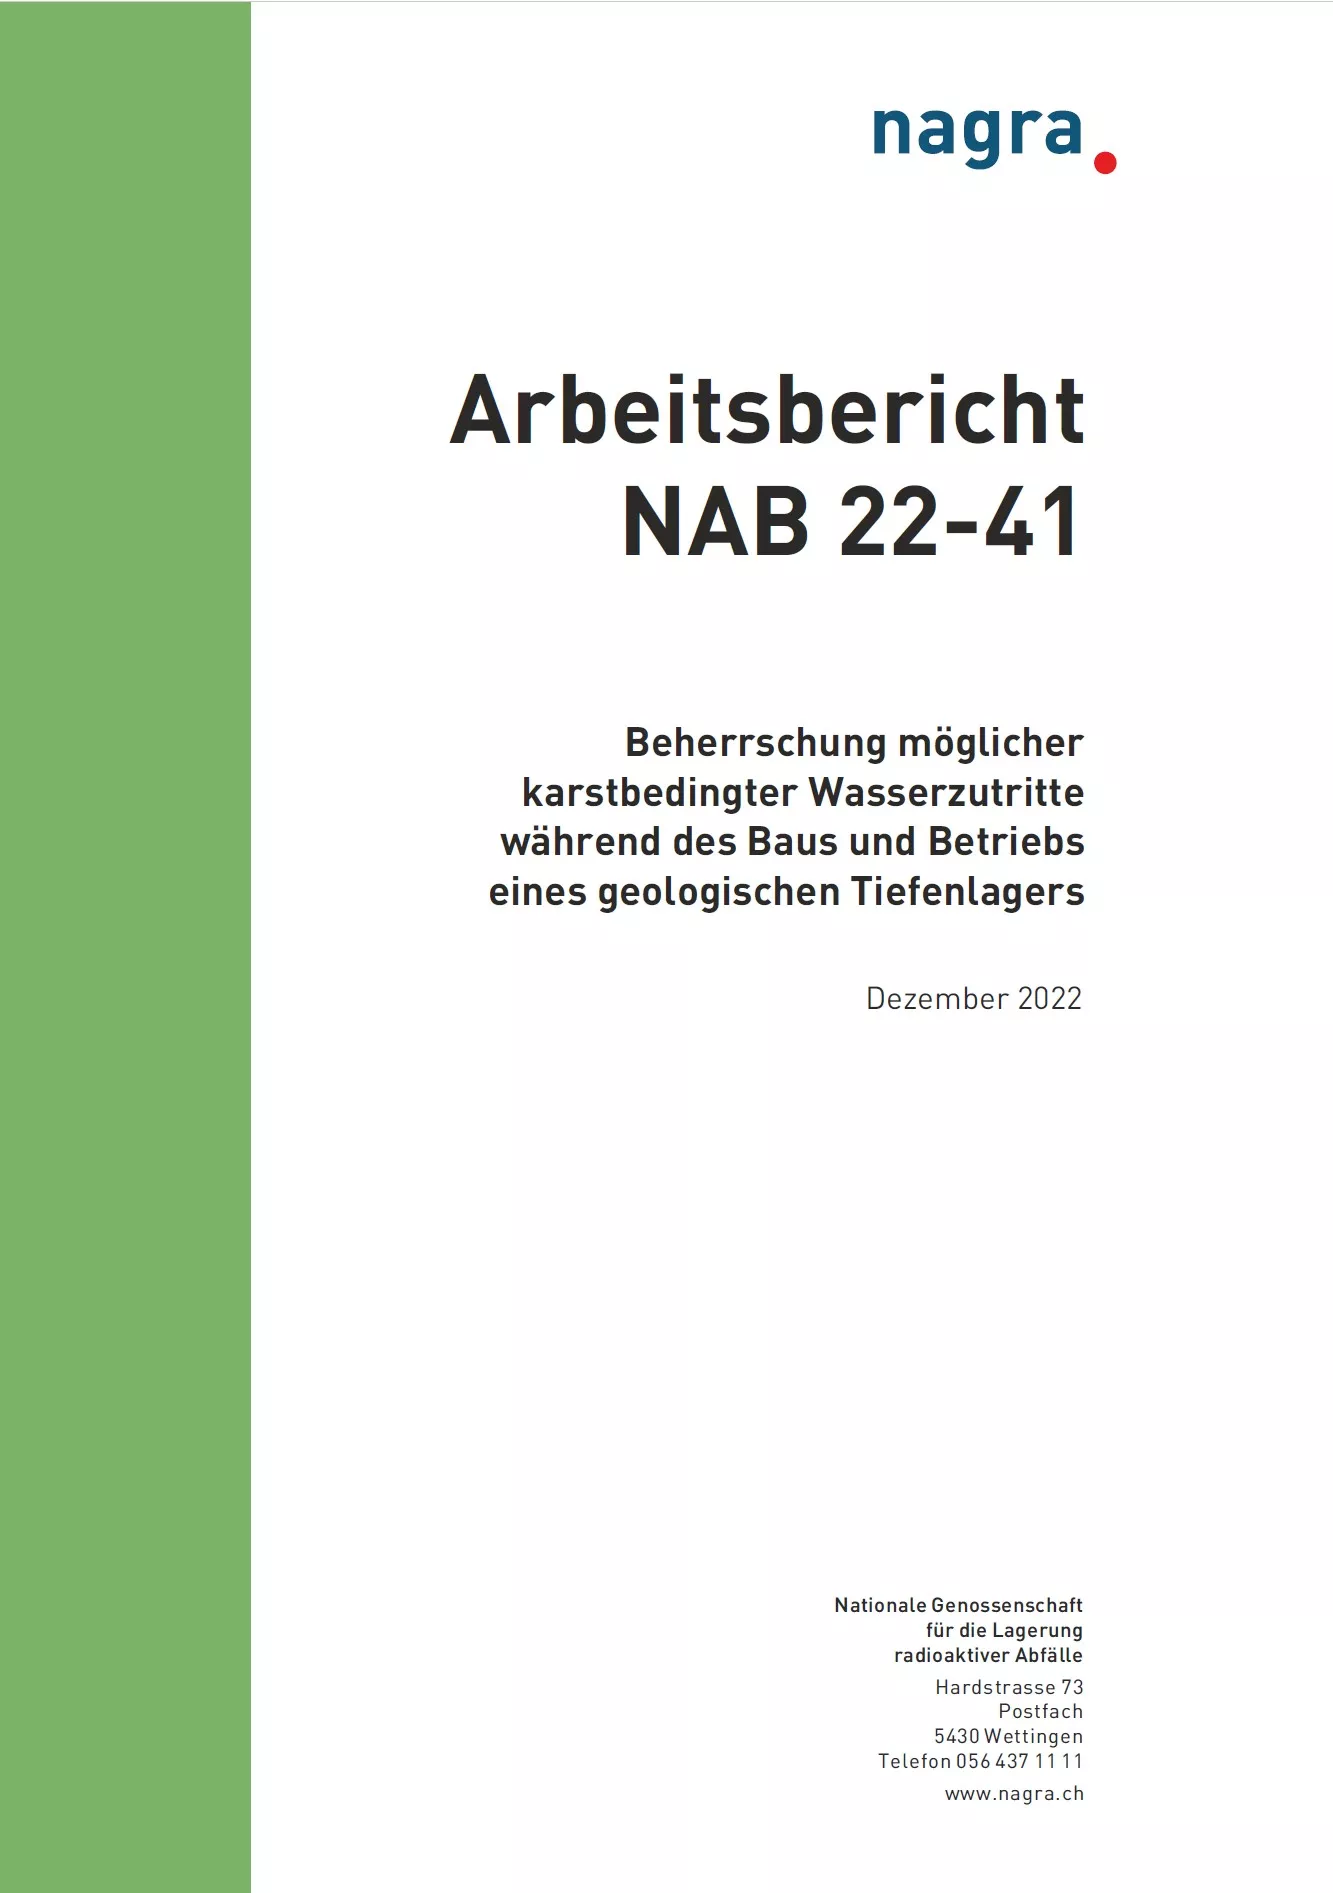 nab-22-41